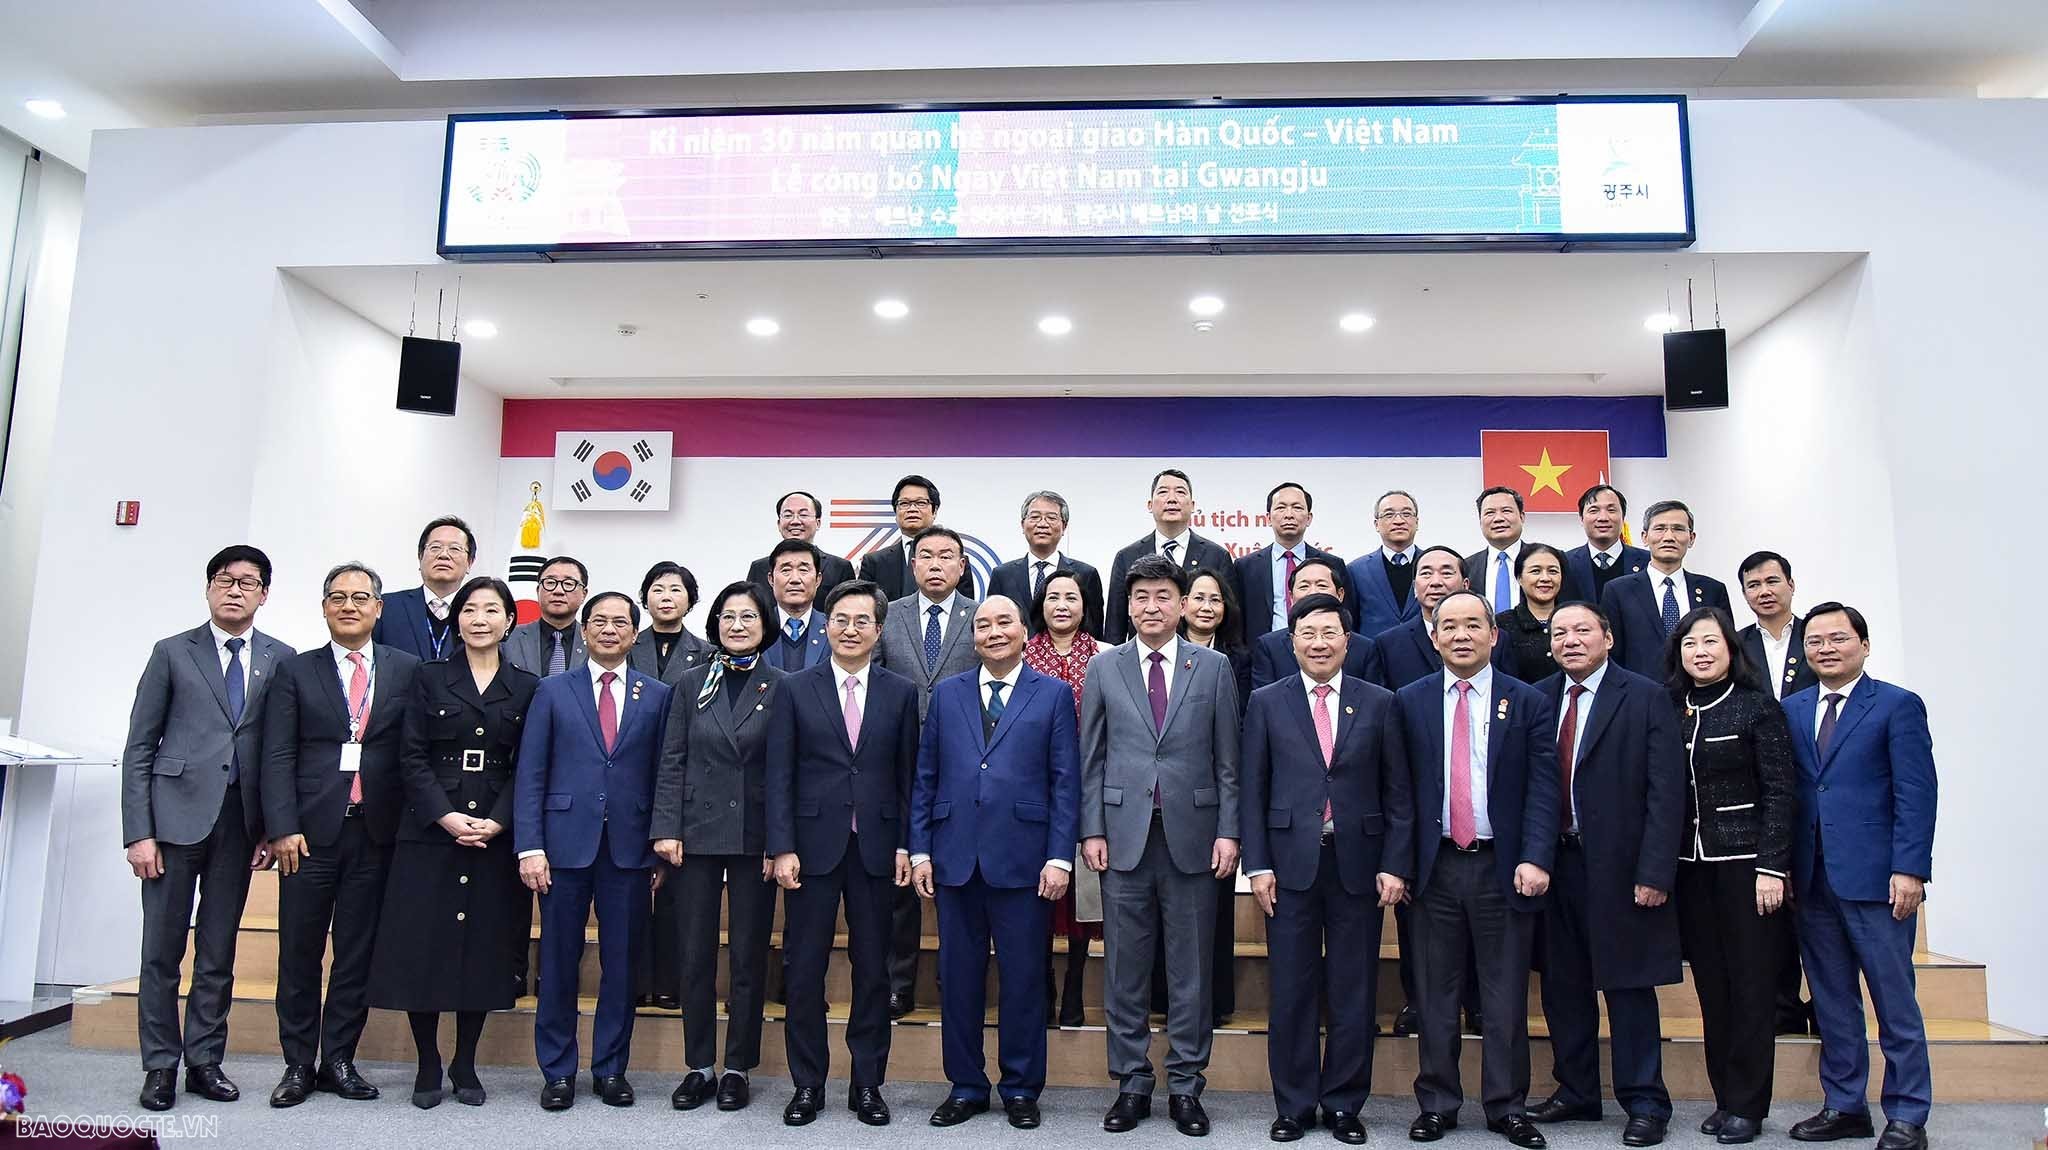 Chủ tịch nước thăm tỉnh Gyeonggi, công bố Ngày Việt Nam tại Gwangju, Hàn Quốc